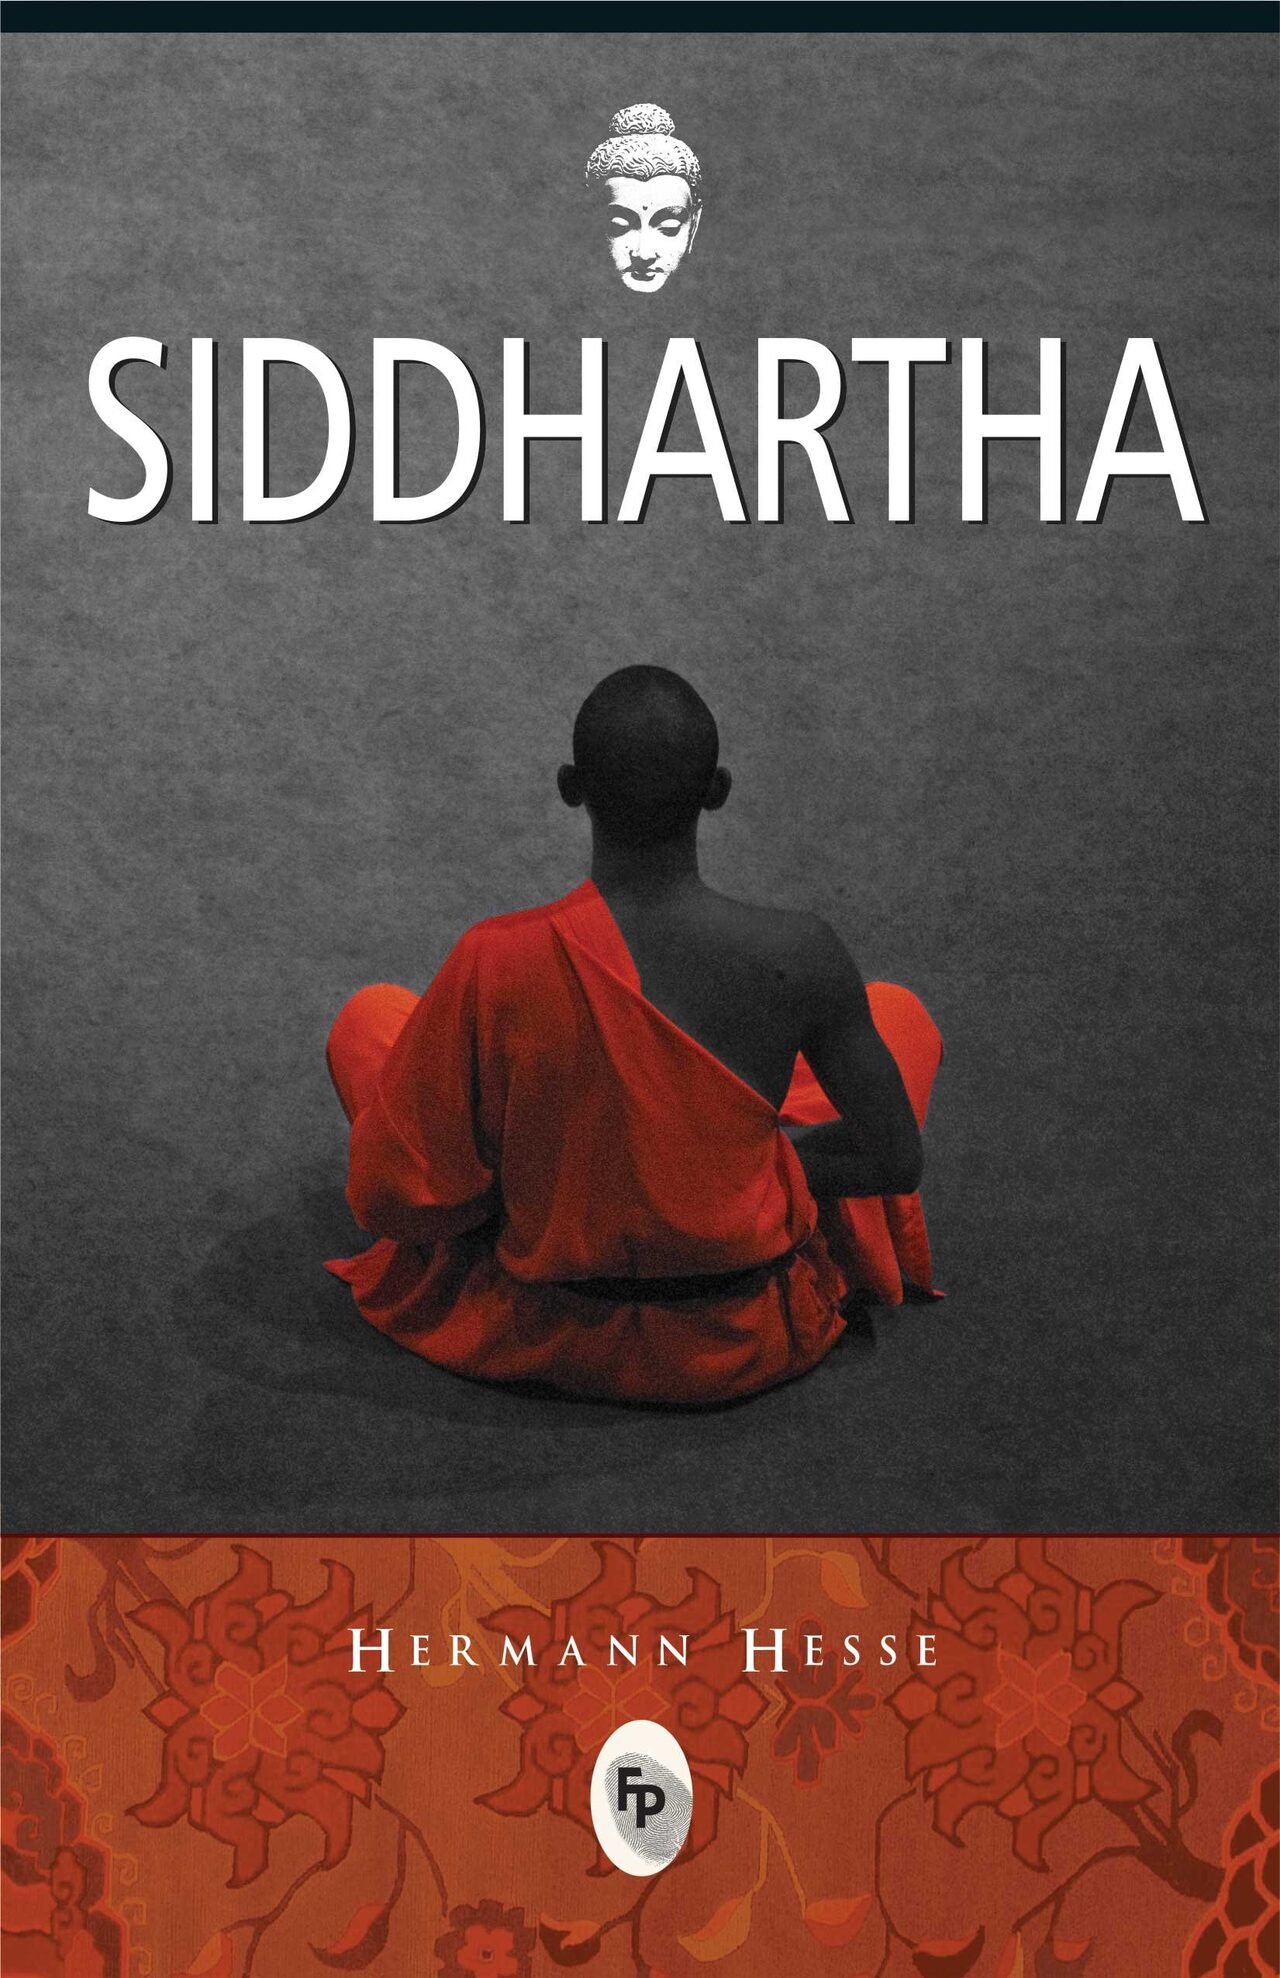 hinh anh bia cuon sach siddhartha - Siddhartha: Bài ca muôn điệu về cuộc hạnh ngộ đẹp đẽ